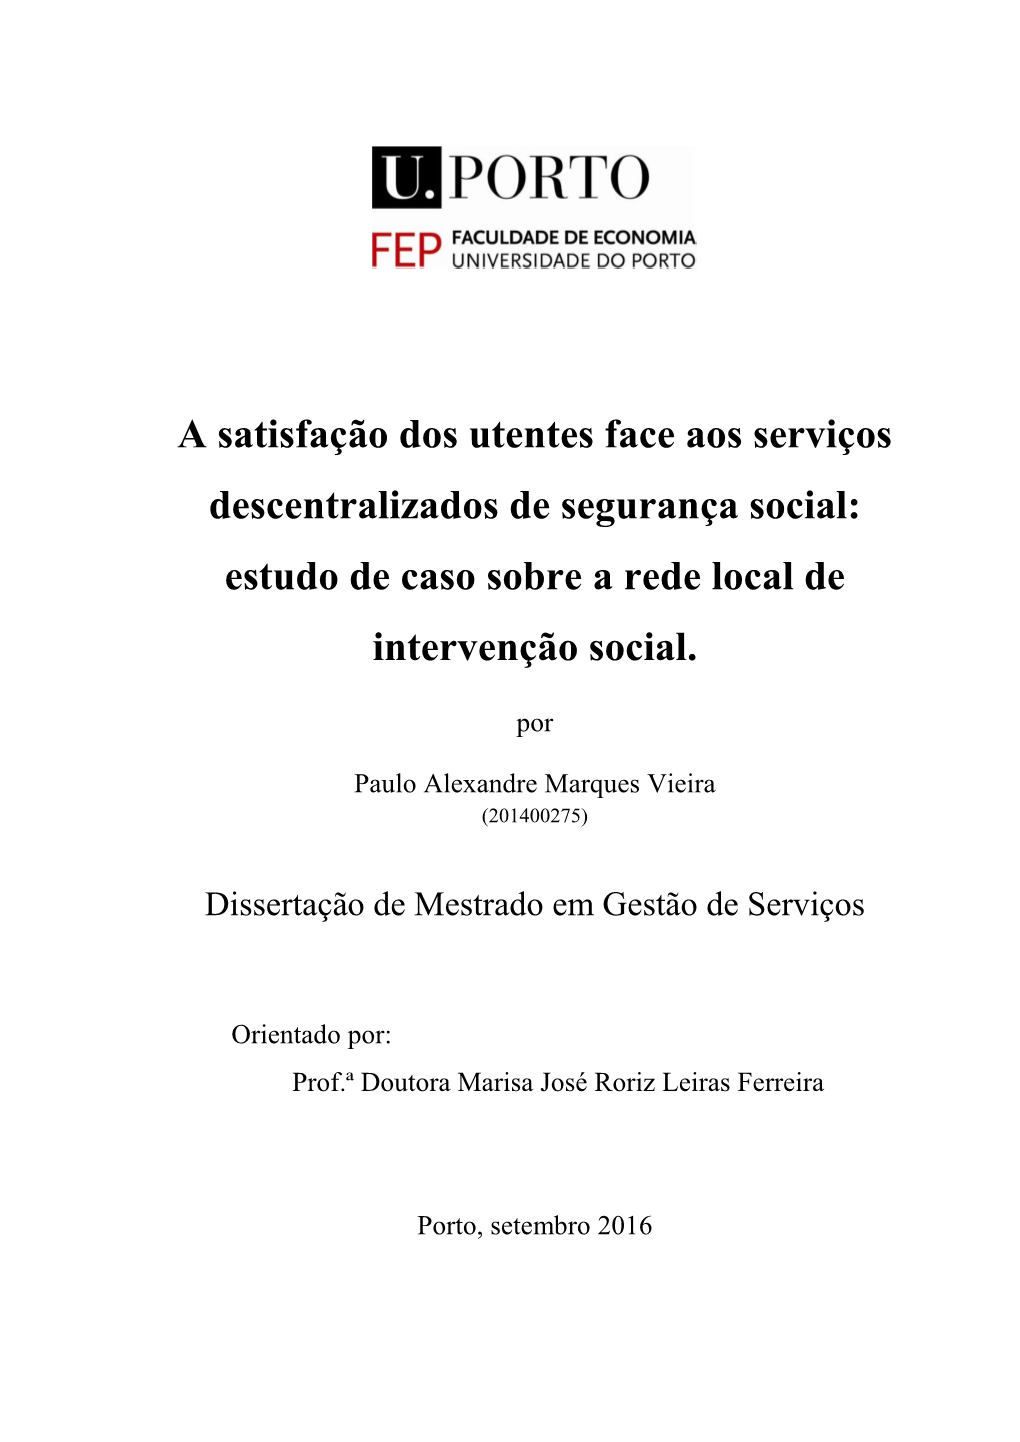 A Satisfação Dos Utentes Face Aos Serviços Descentralizados De Segurança Social: Estudo De Caso Sobre a Rede Local De Intervenção Social